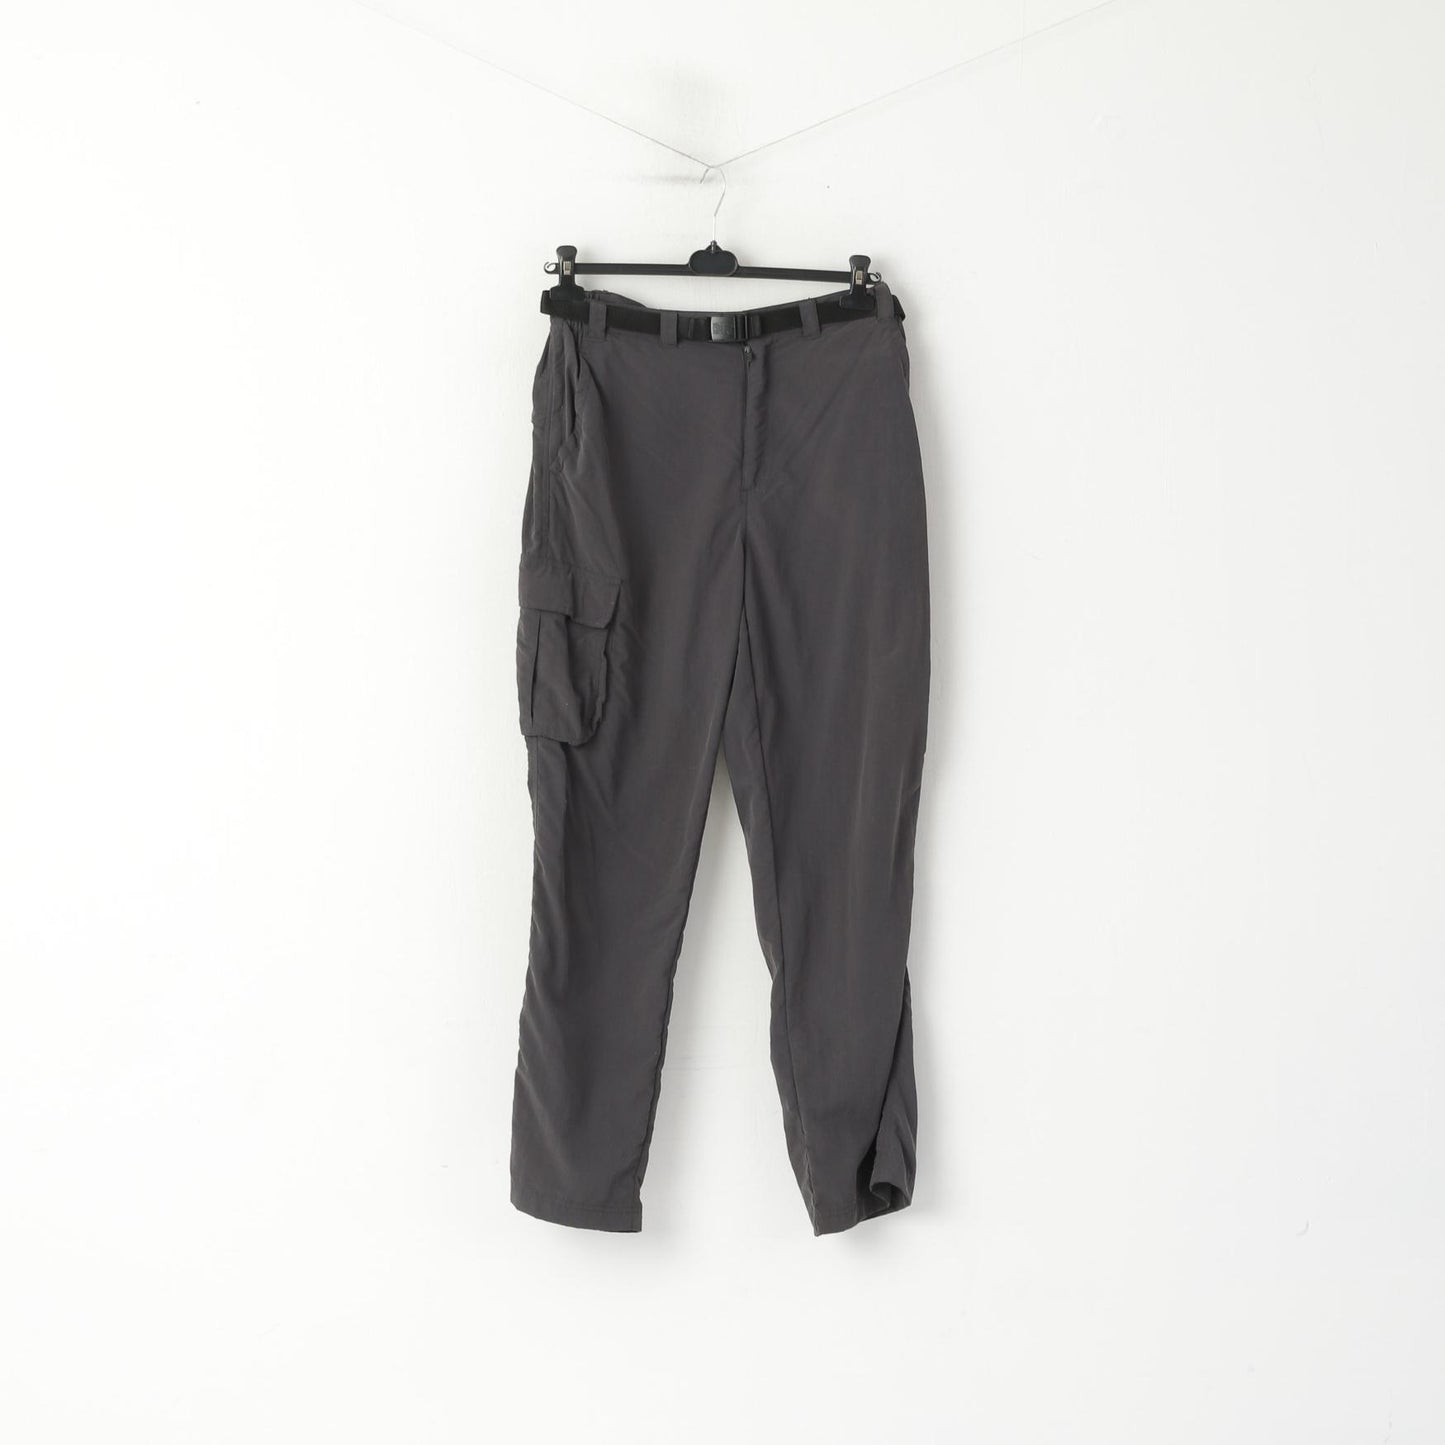 Karrimor Men L Trousers Grey Outdoor Nylon Waterproof Combat Pants